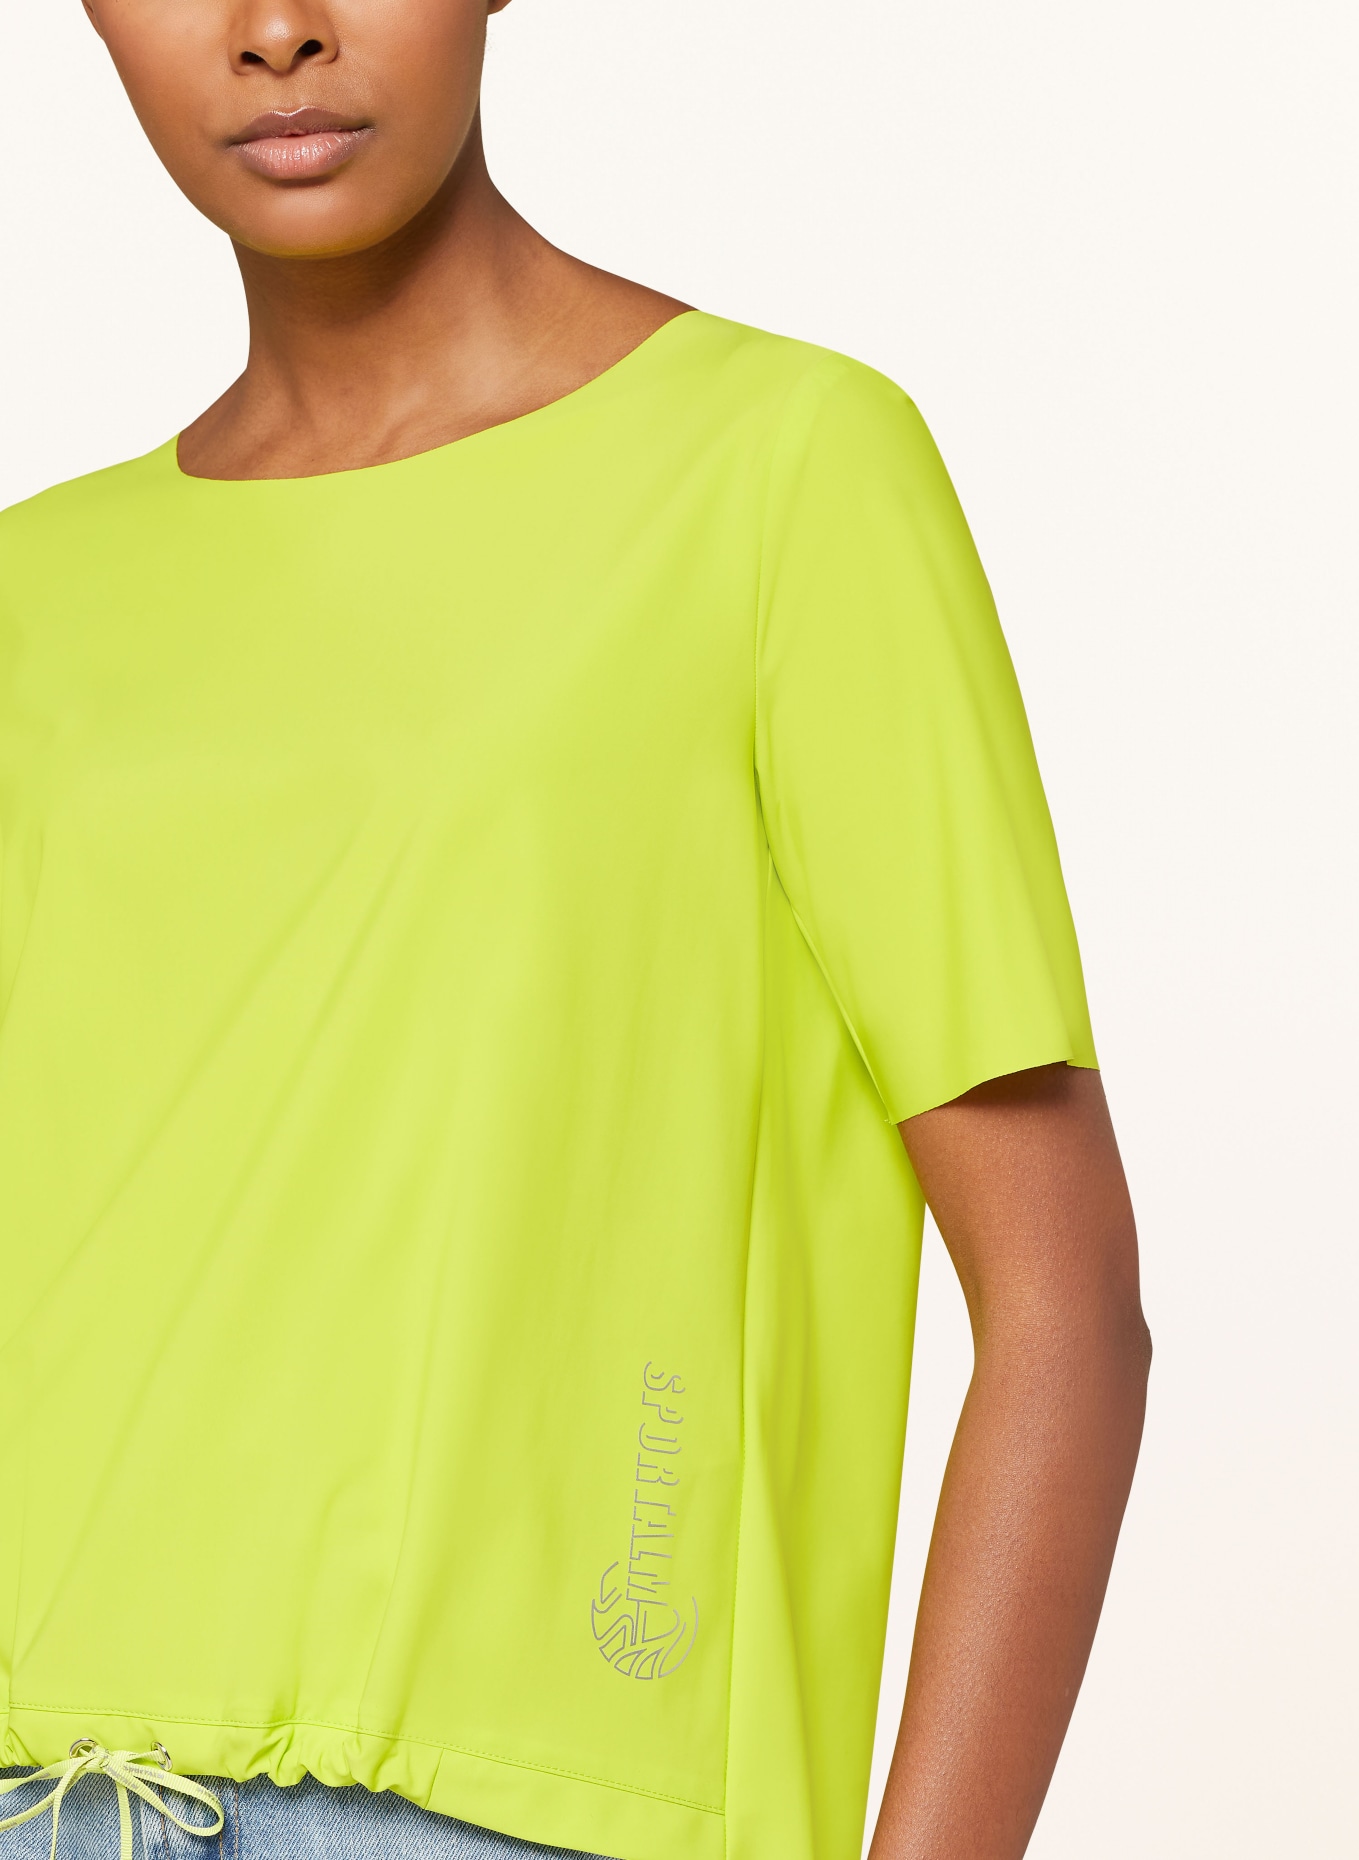 ULLI EHRLICH SPORTALM T-shirt, Color: NEON GREEN (Image 4)